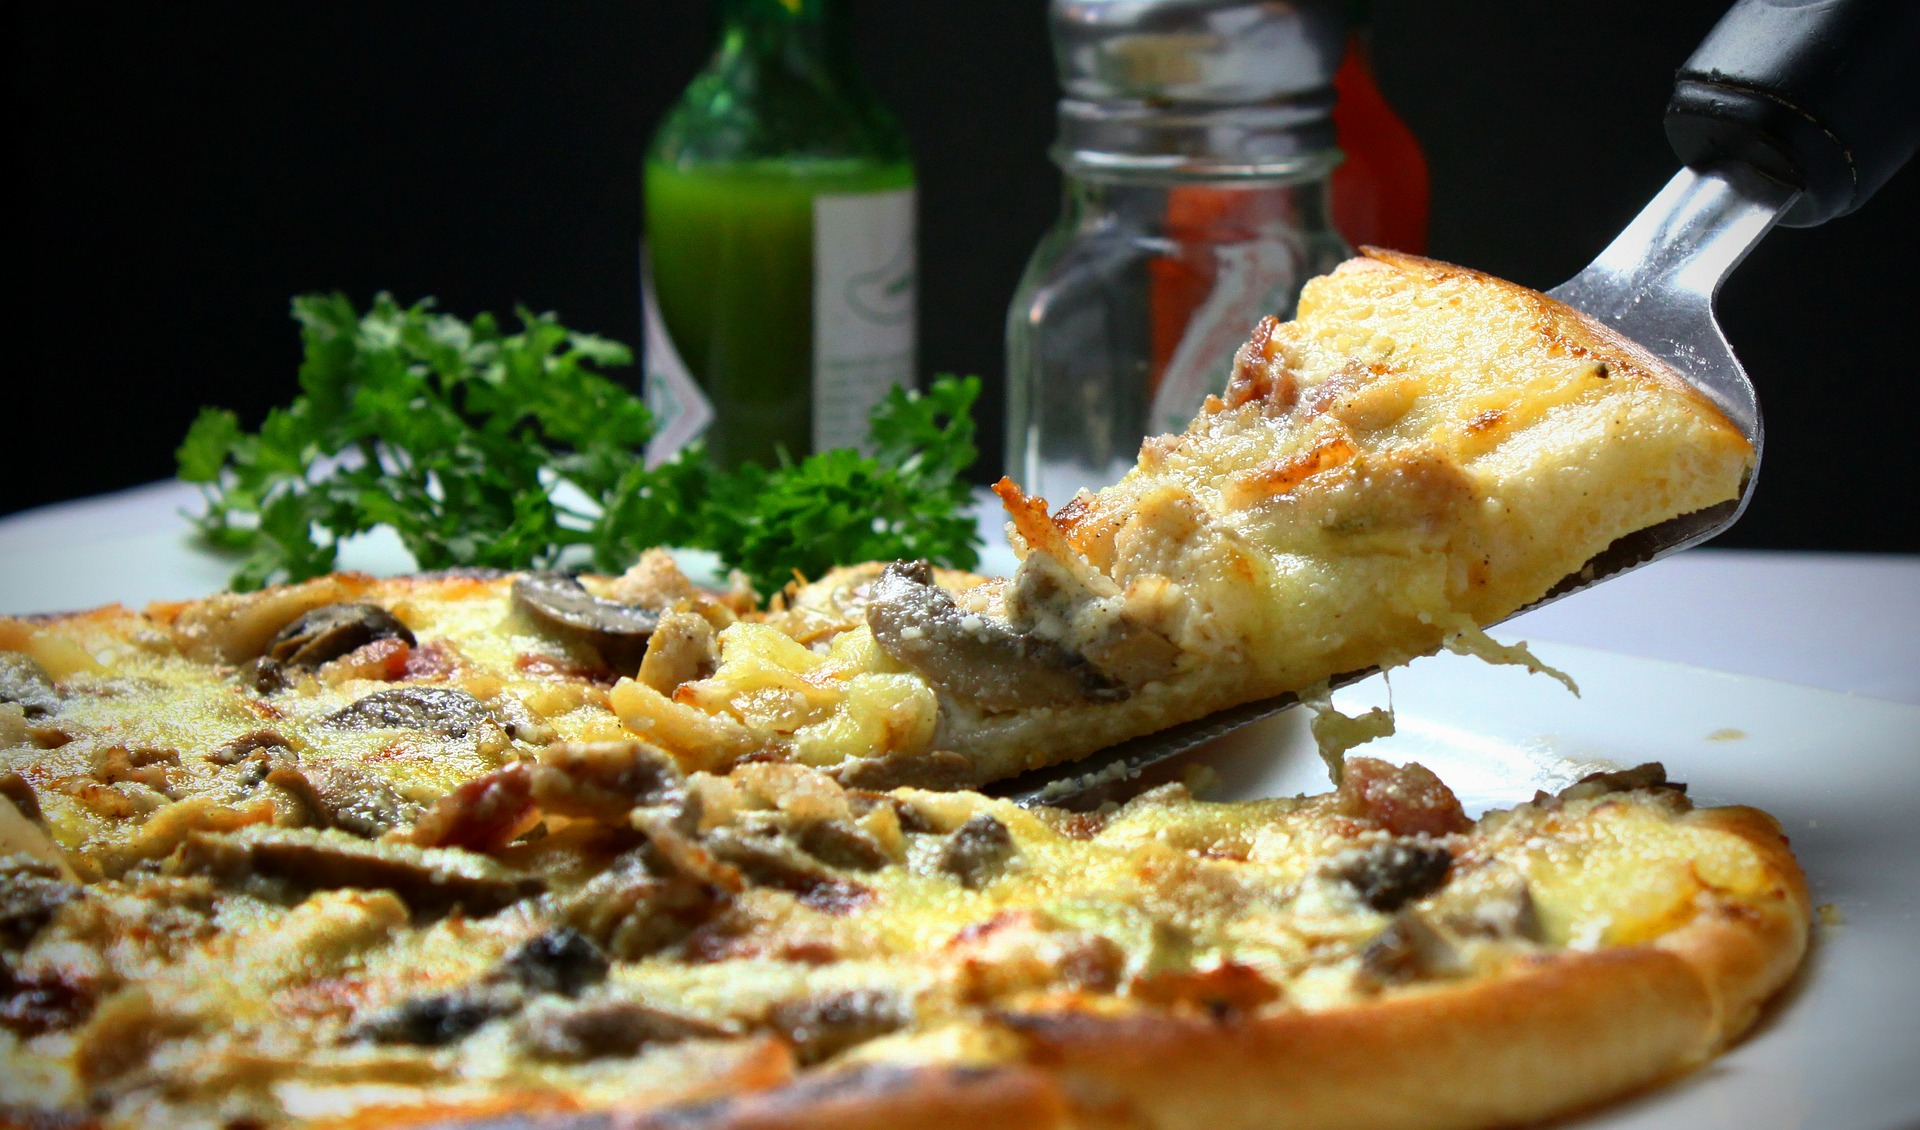 طريقة عمل البيتزا كالمحترفين في المنزل والسر وراء الطعم الأصلي بخطوات مضمونة 100 %